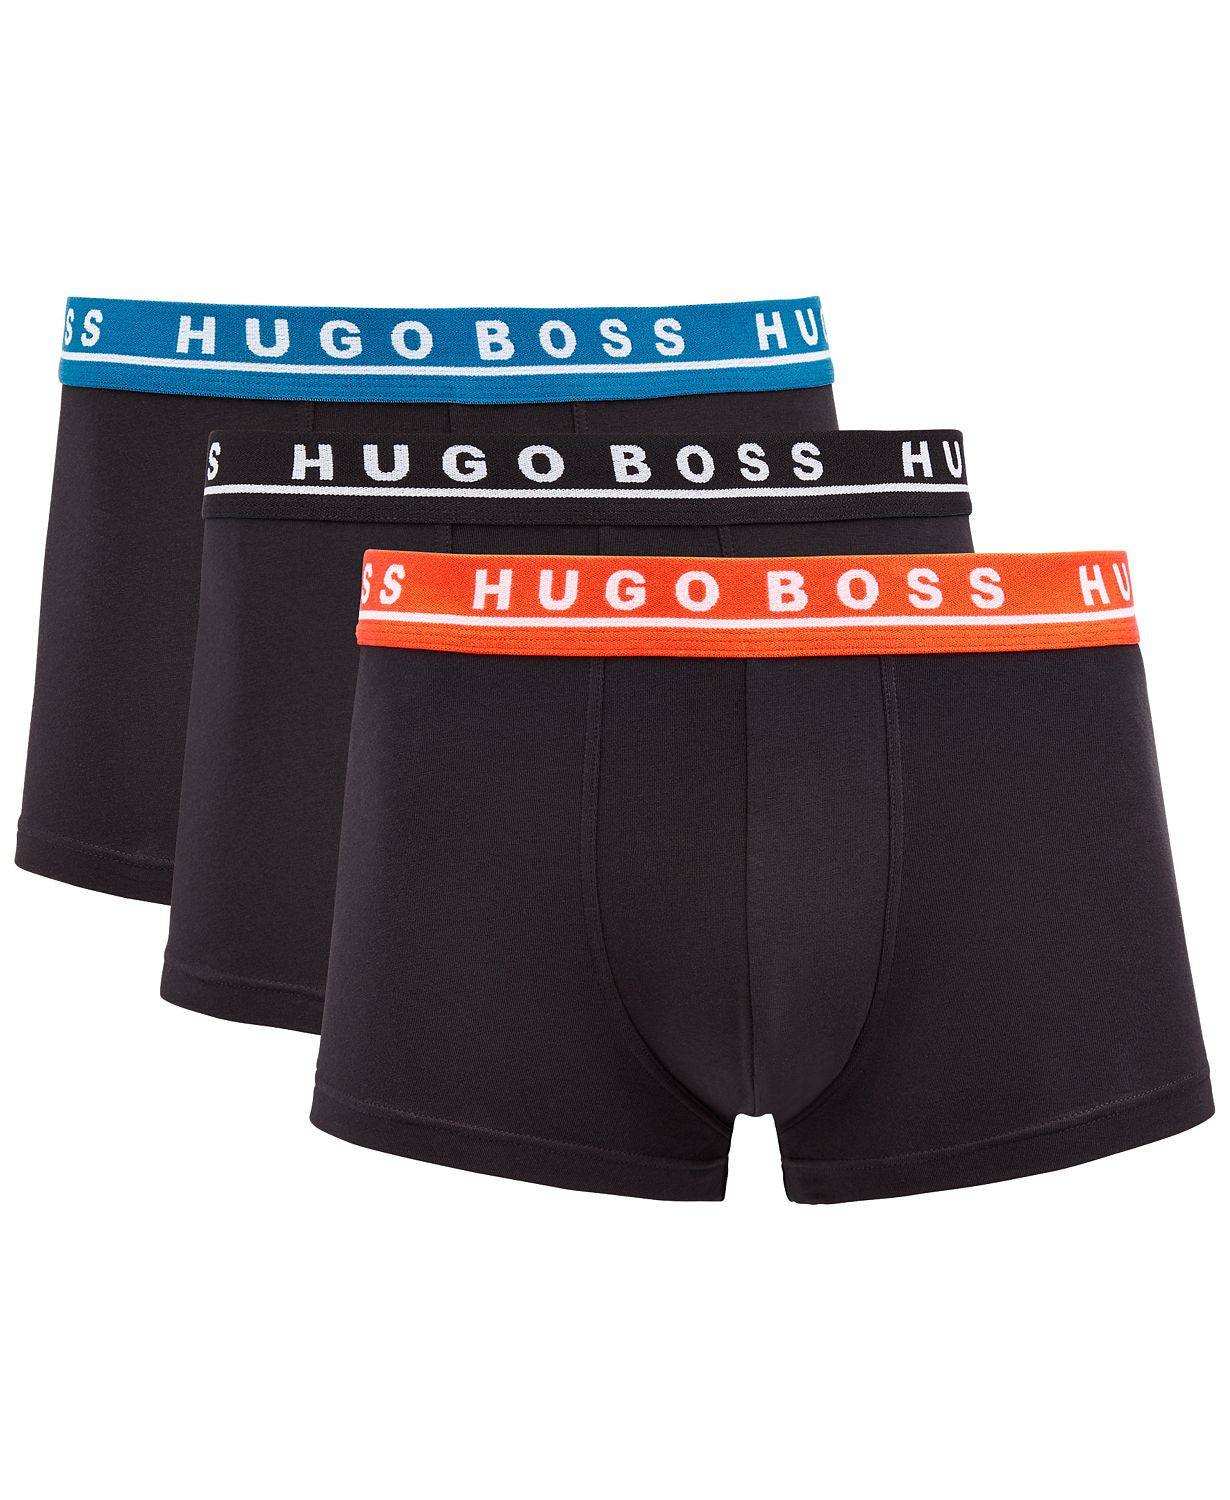 Hugo Boss Trunk 3-pack Cotton Stretch Multi